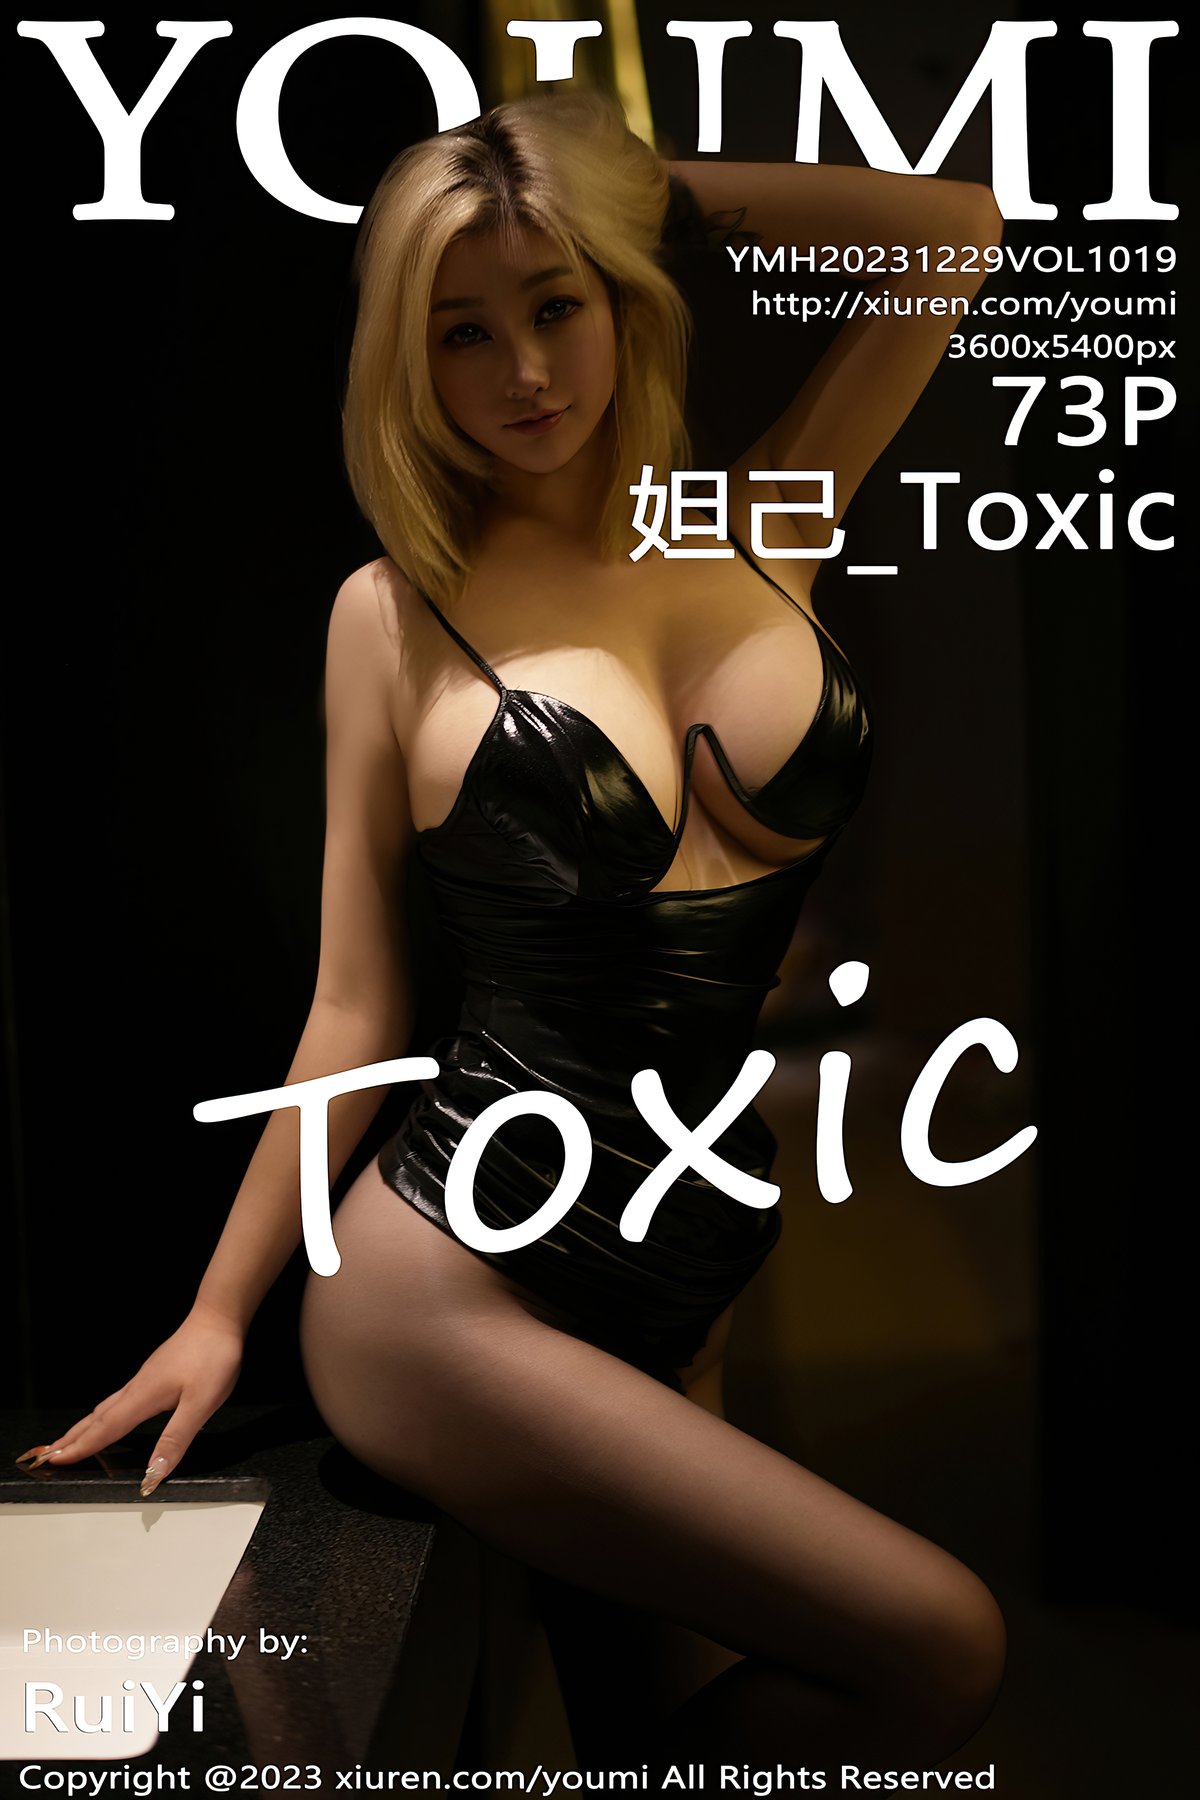 YouMi Vol.1019 Da Ji Toxic